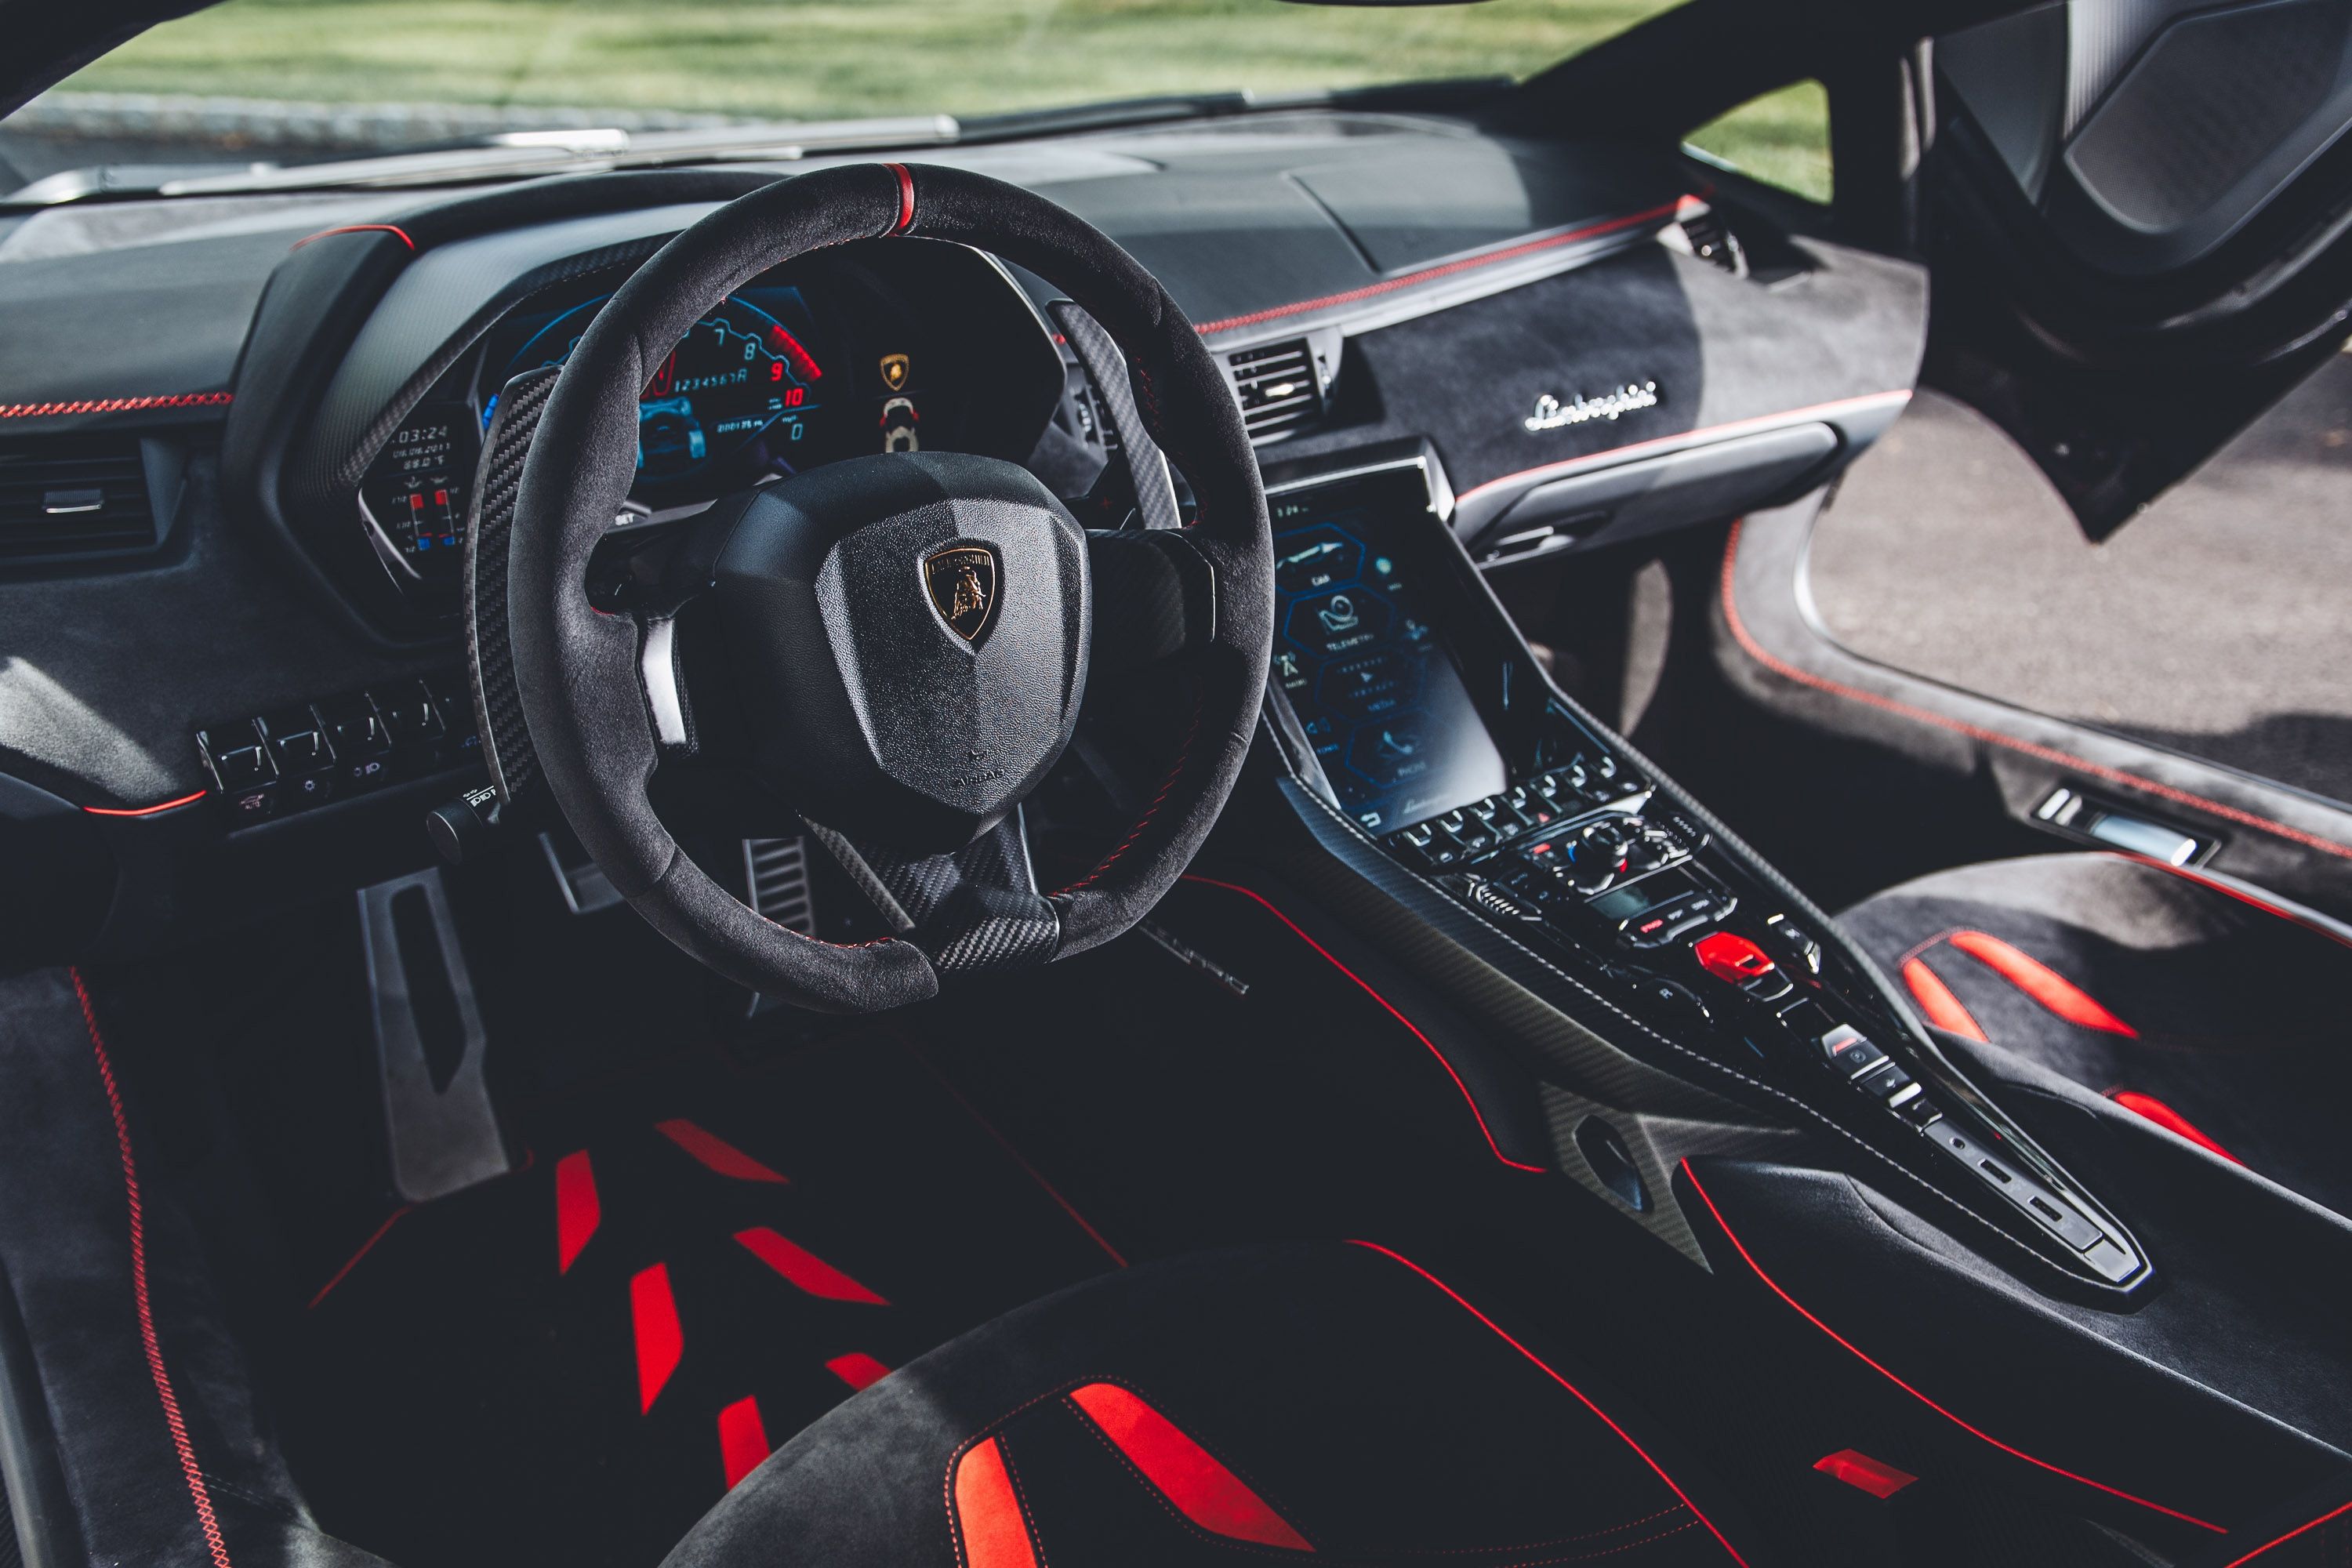 Lamborghini Centenario Coupe Interior, HD Cars, 4k Wallpaper, Image, Background, Photo and Picture